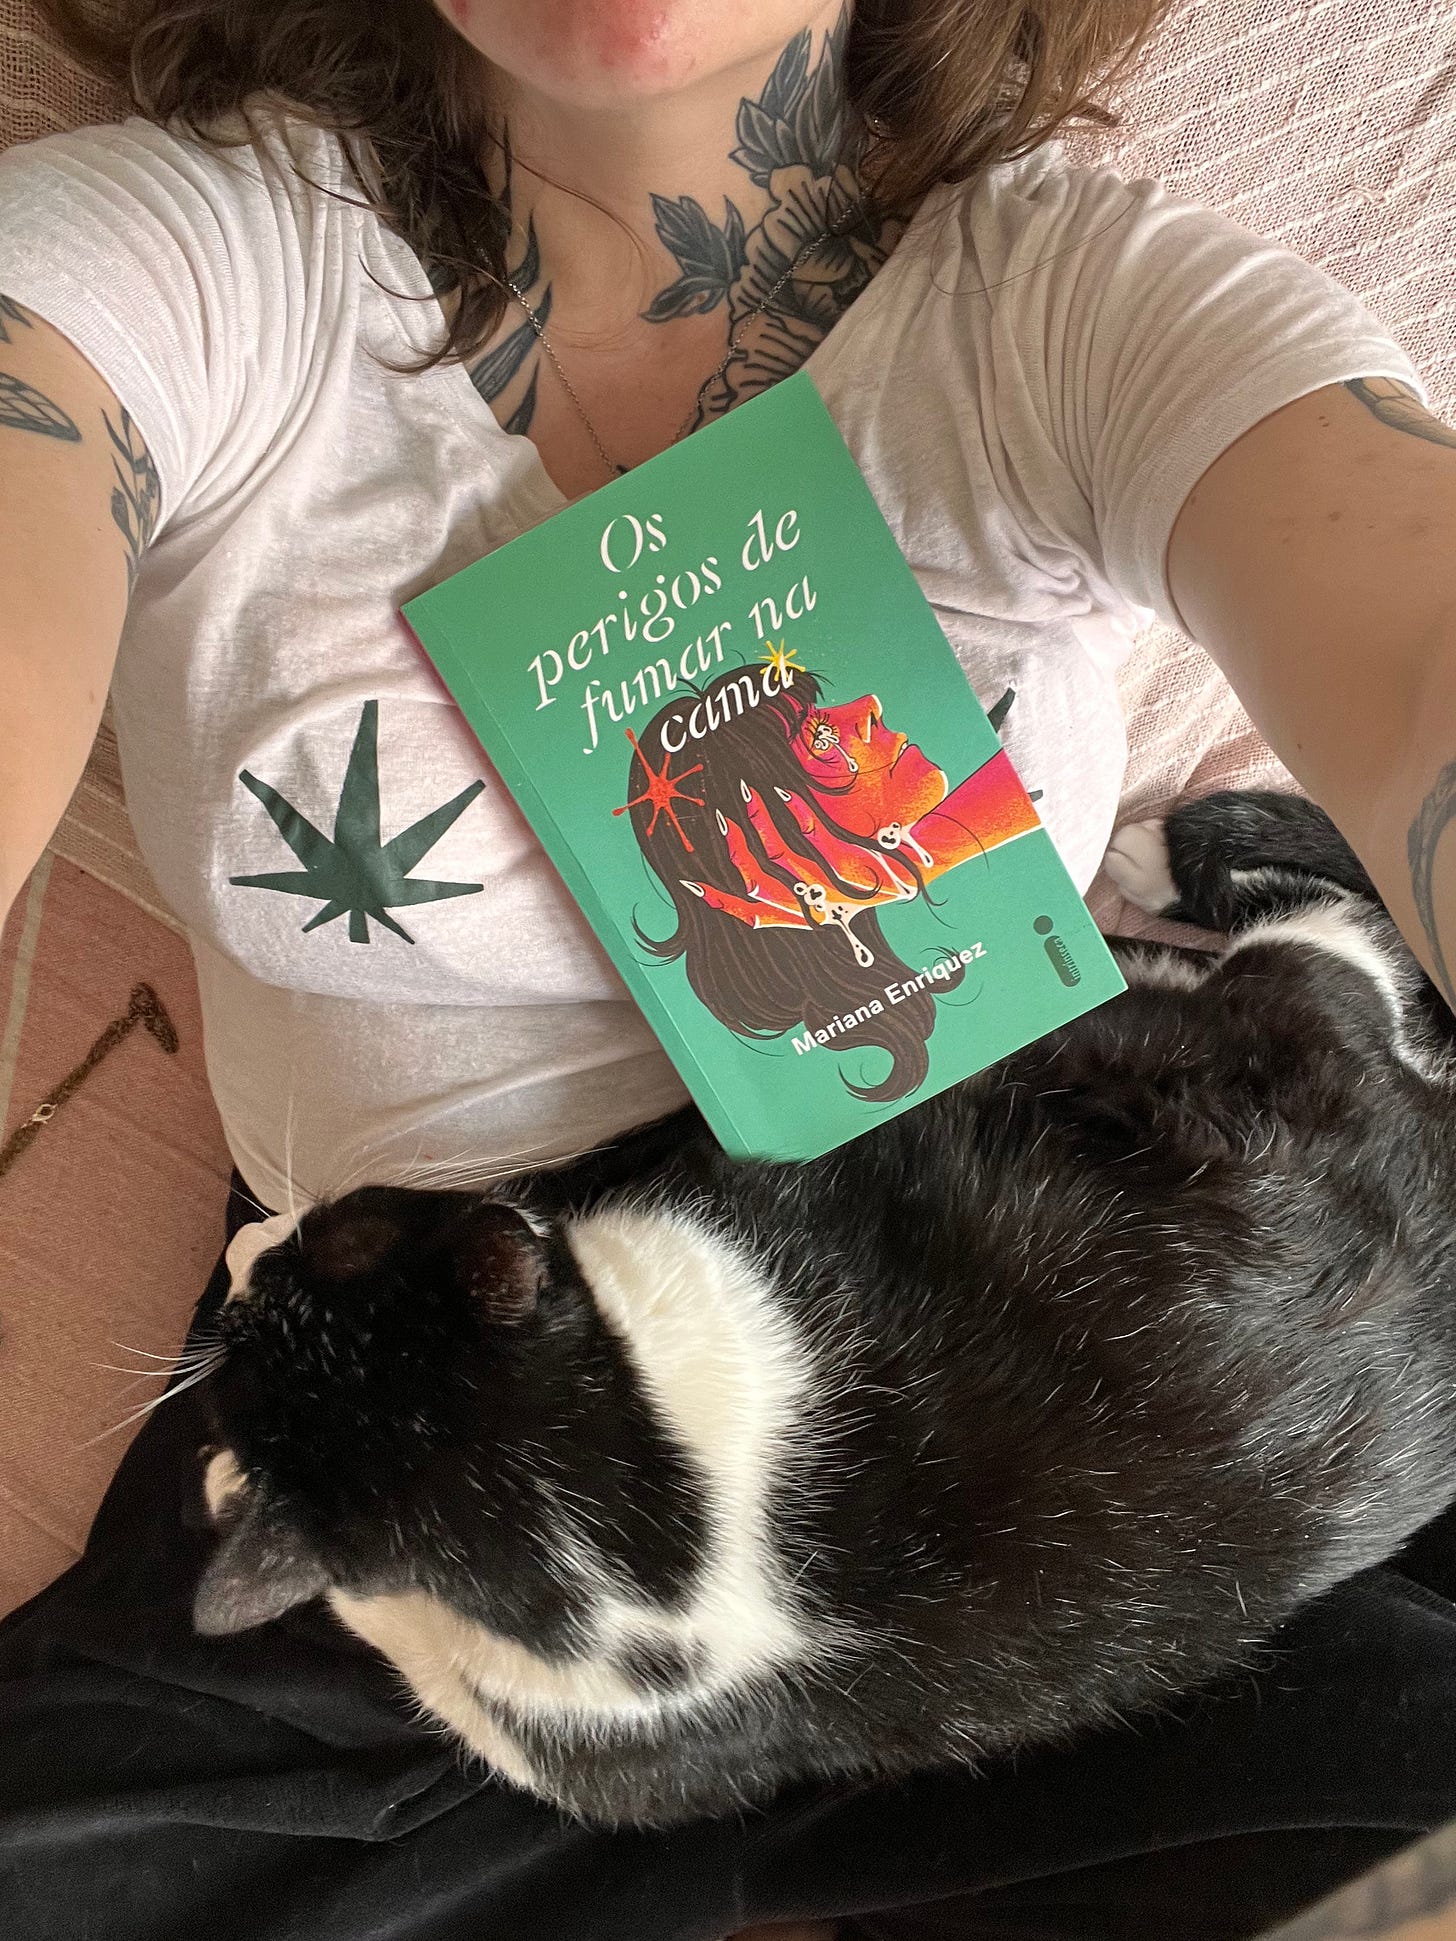 Foto do livro Os perigos de fumar na cama, tirada de cima, o livro está em cima de mim e tem um gato deitado na minha barriga próximo dele